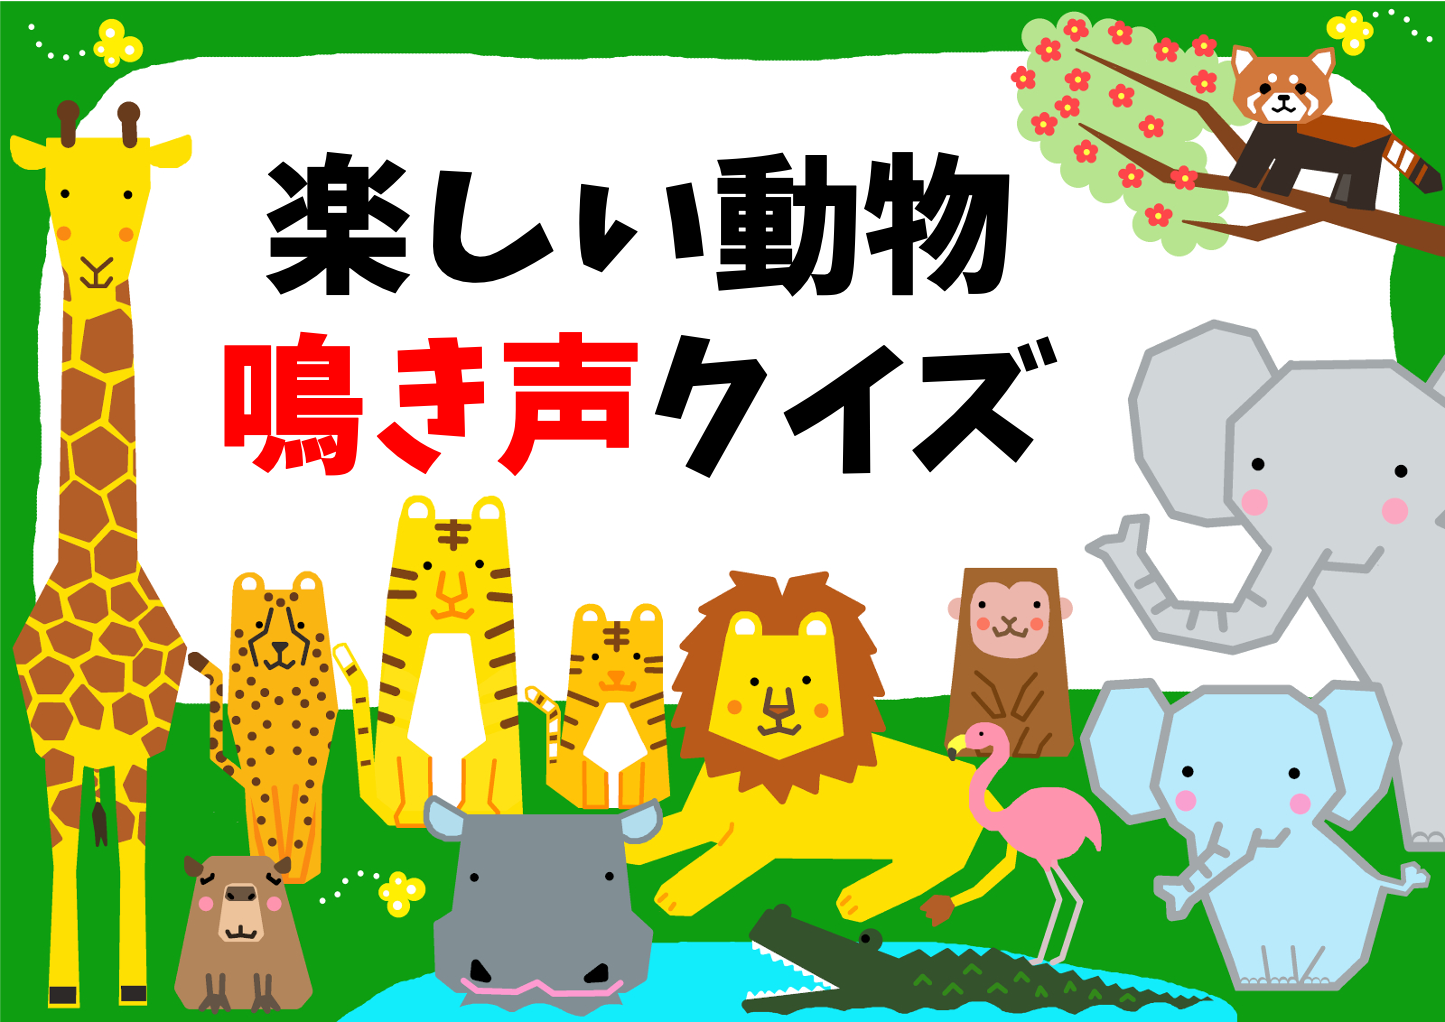 動物 クイズ全問 小学生 子供向け 簡単 面白い雑学マルバツ問題を紹介 クイズ王国